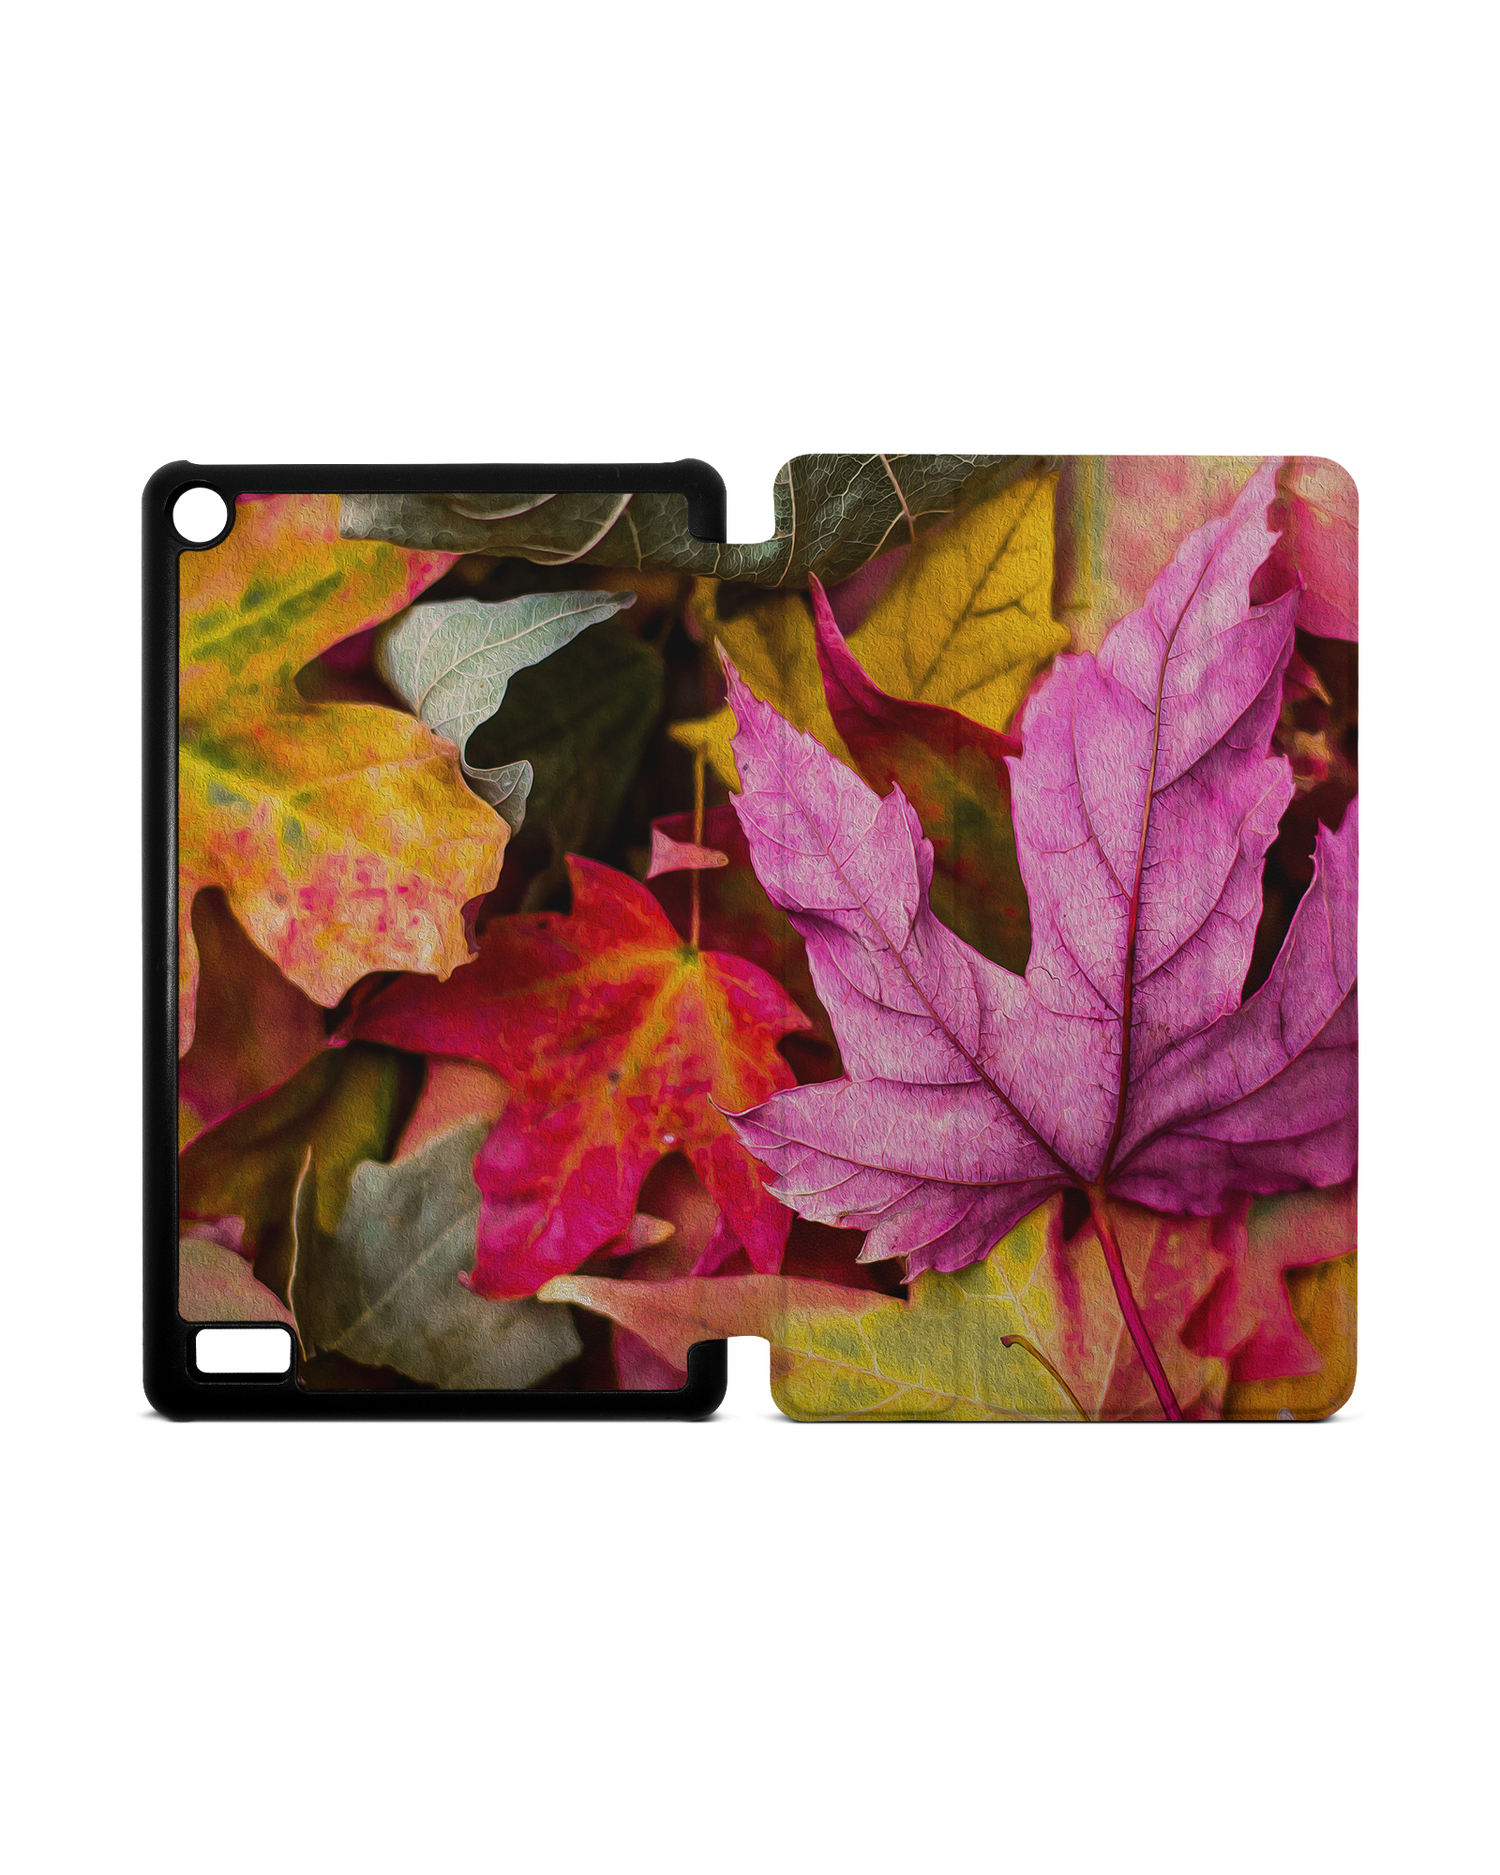 Autumn Leaves Tablet Smart Case für Amazon Fire 7: Aufgeklappt